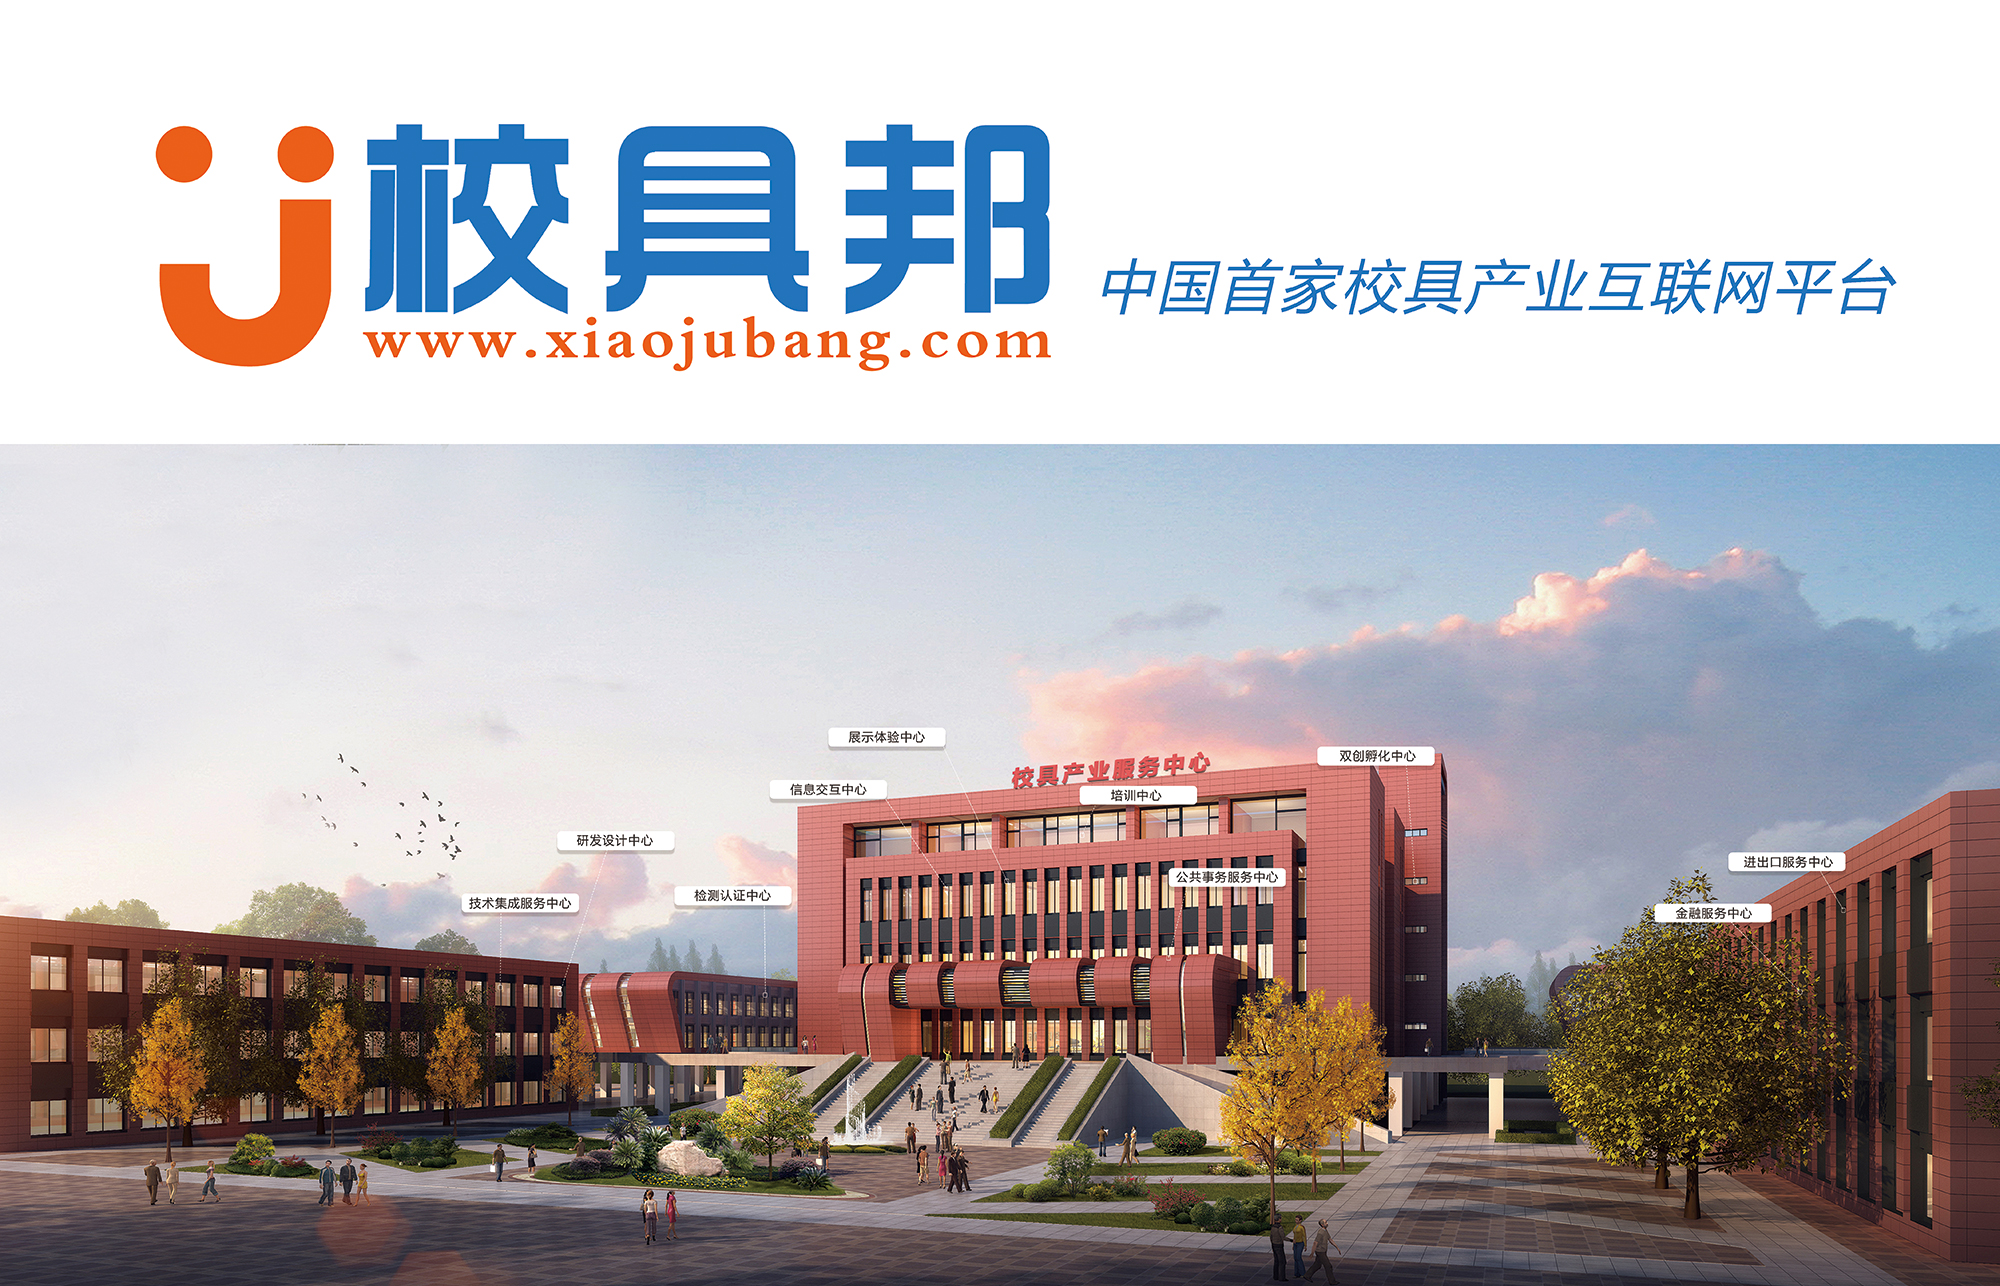 校具邦平台亮相成都第74届中国教育装备展示会